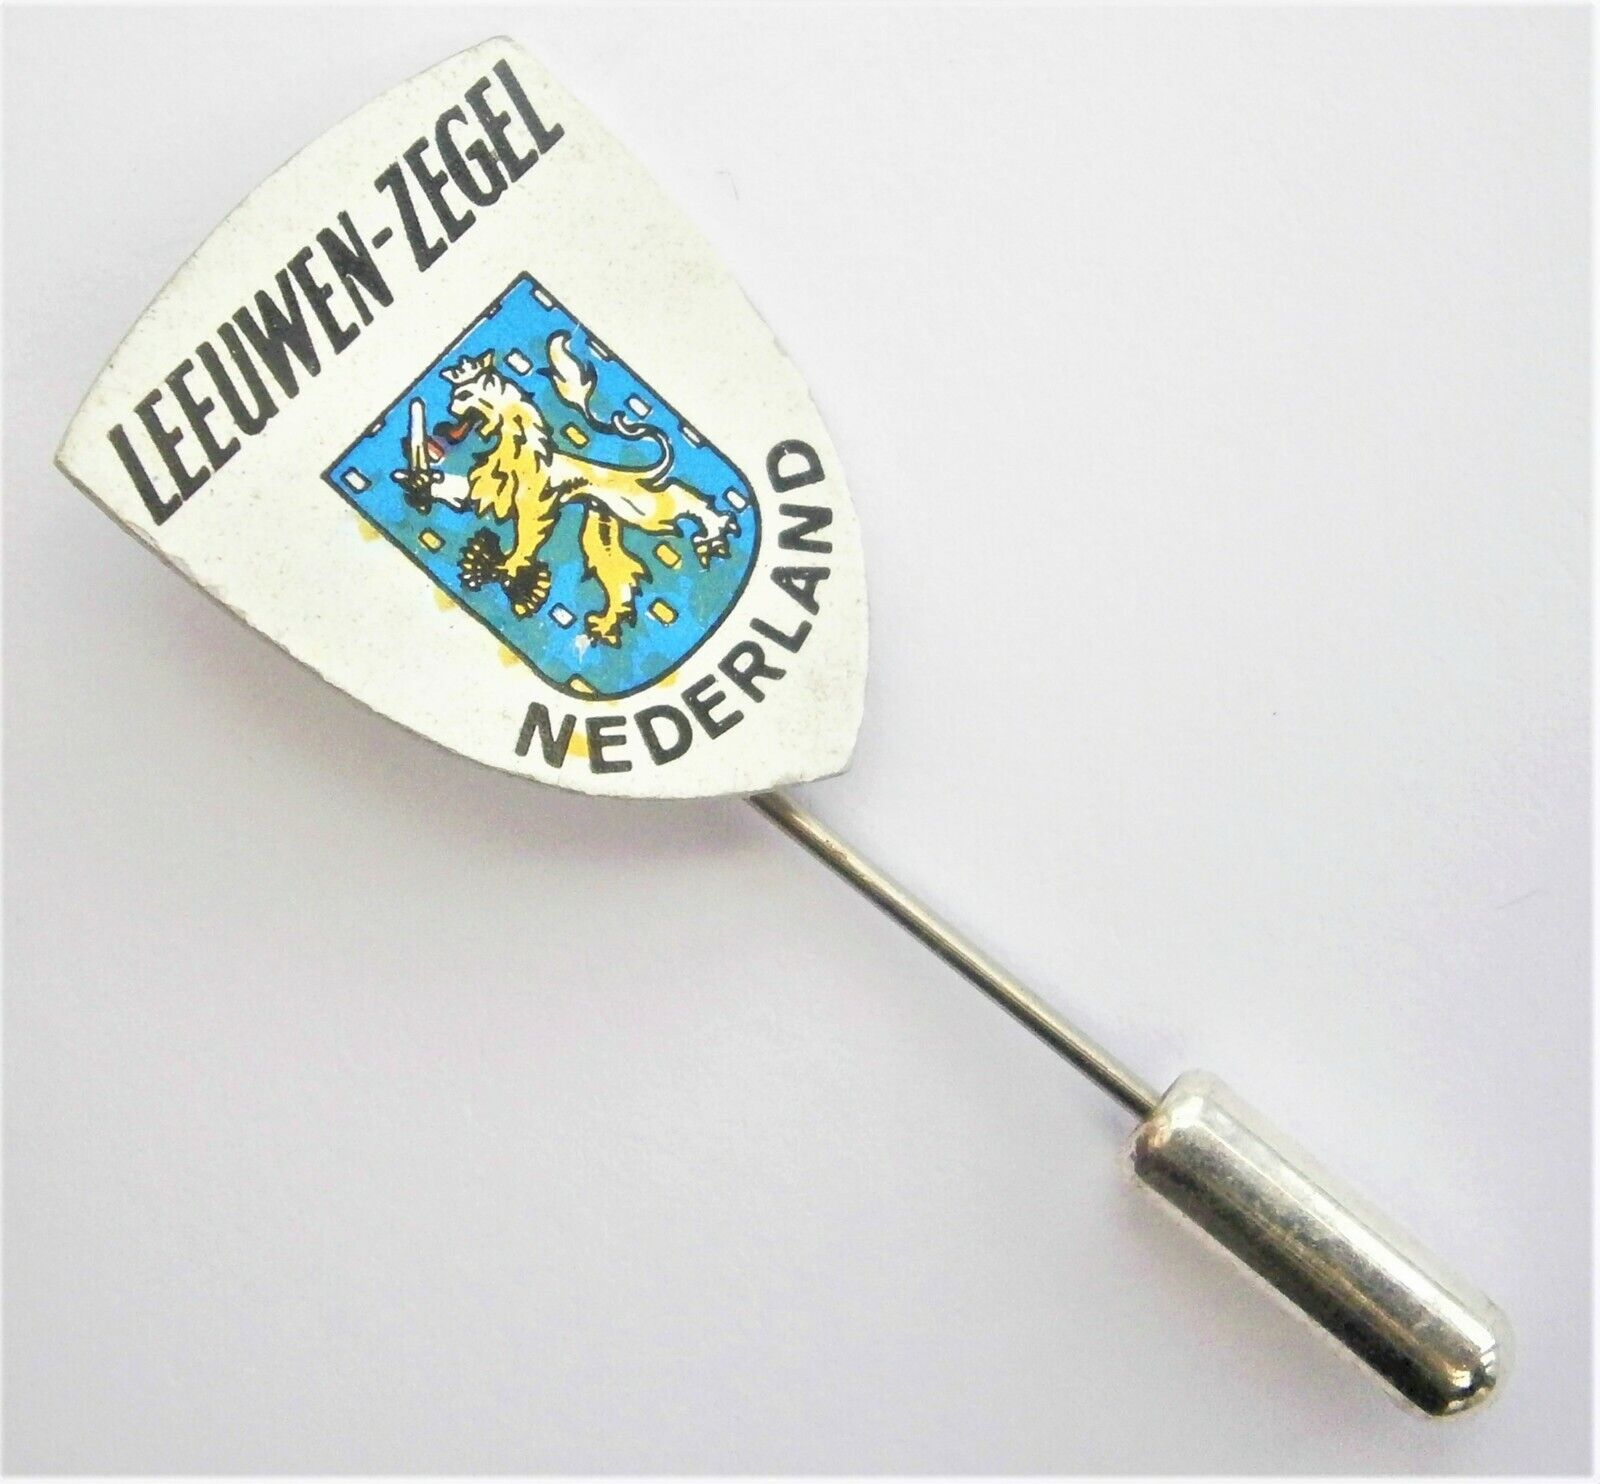 E236) Vintage Leeuwen Zegel Nederland Netherlands crest shield lapel pin badge